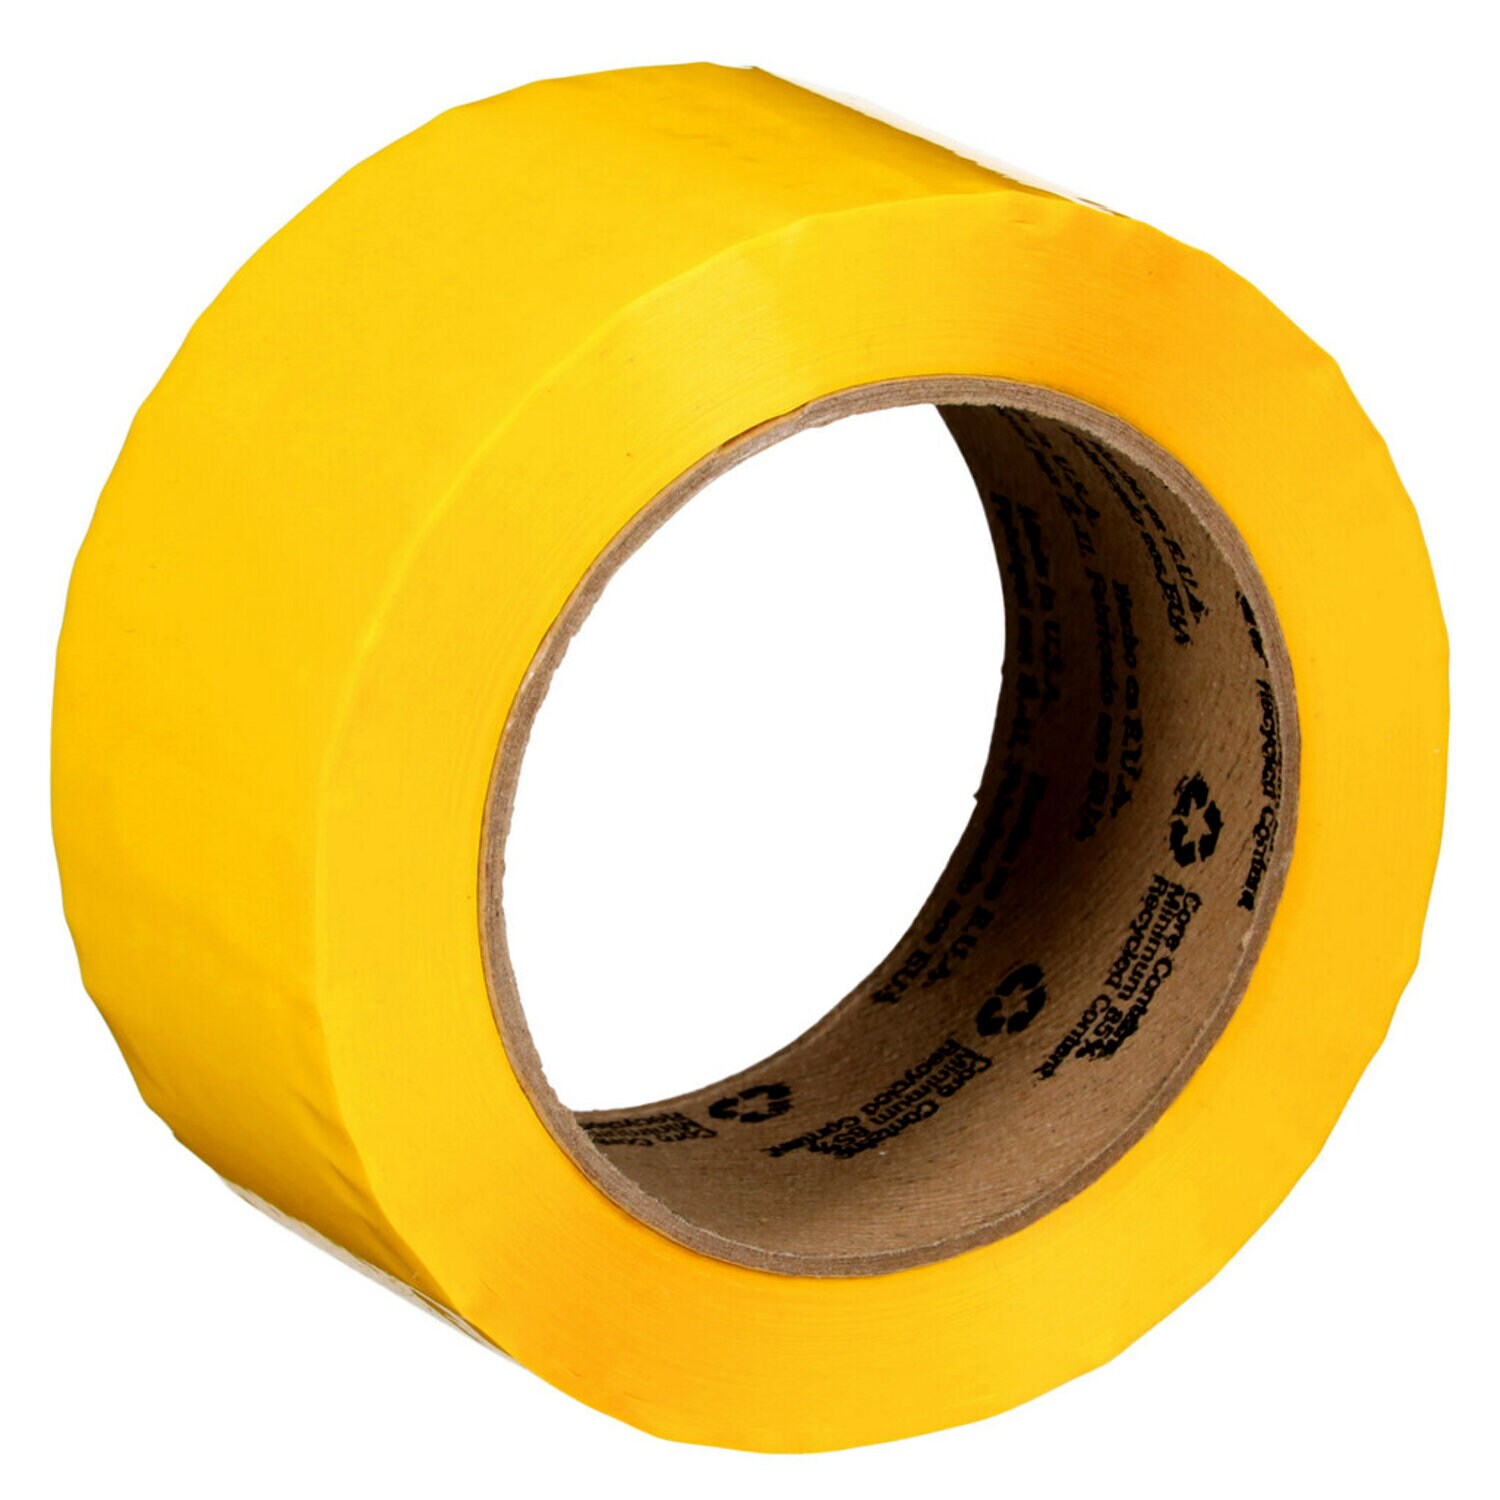 7000123429 - Scotch Box Sealing Tape 371, Yellow, 48 mm x 100 m, 36/Case